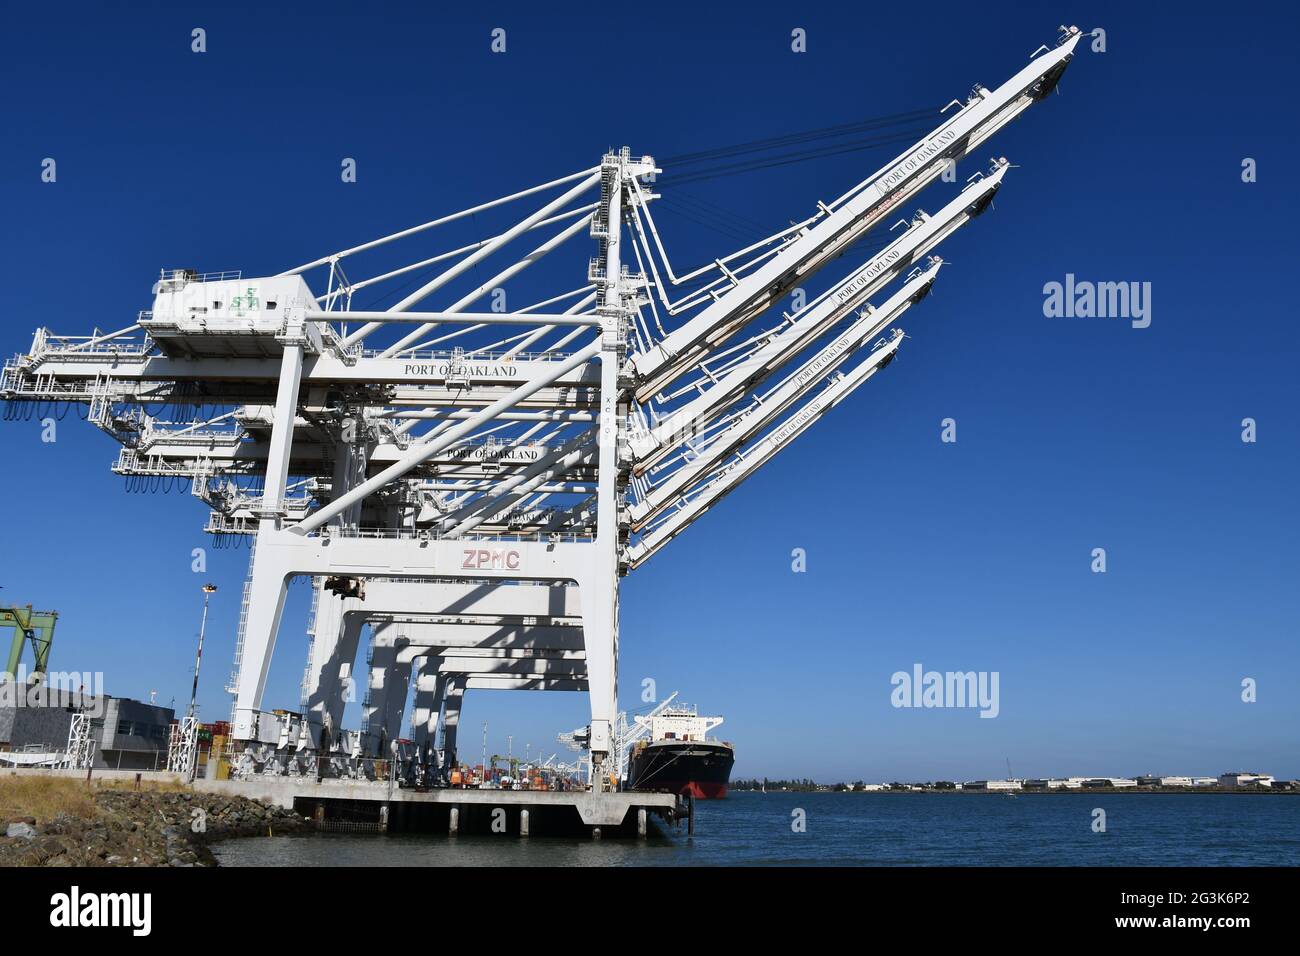 Los contenedores de transporte se cargan en los barcos en el Puerto de Oakland, California, uno de los puertos de carga más ocupados de la costa oeste. Foto de stock